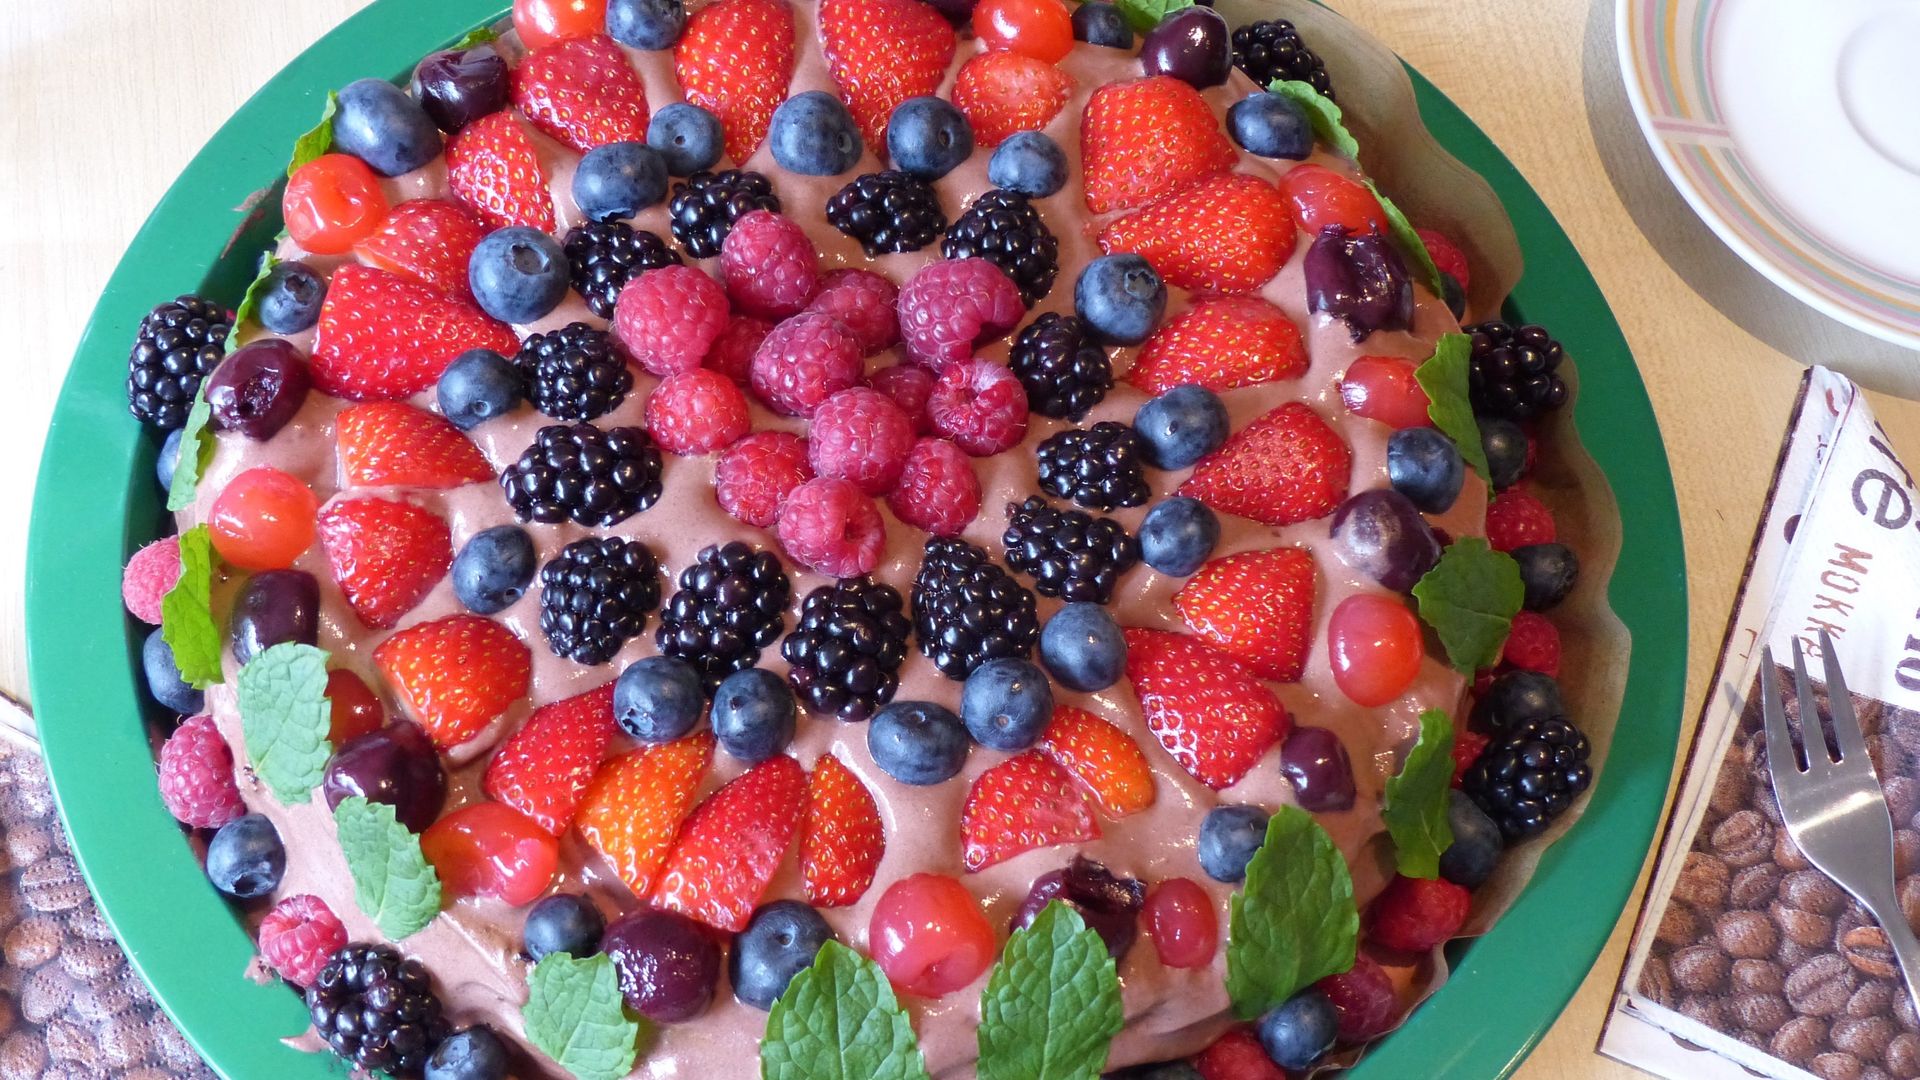 祝你生日快乐 草莓蛋糕图片大全